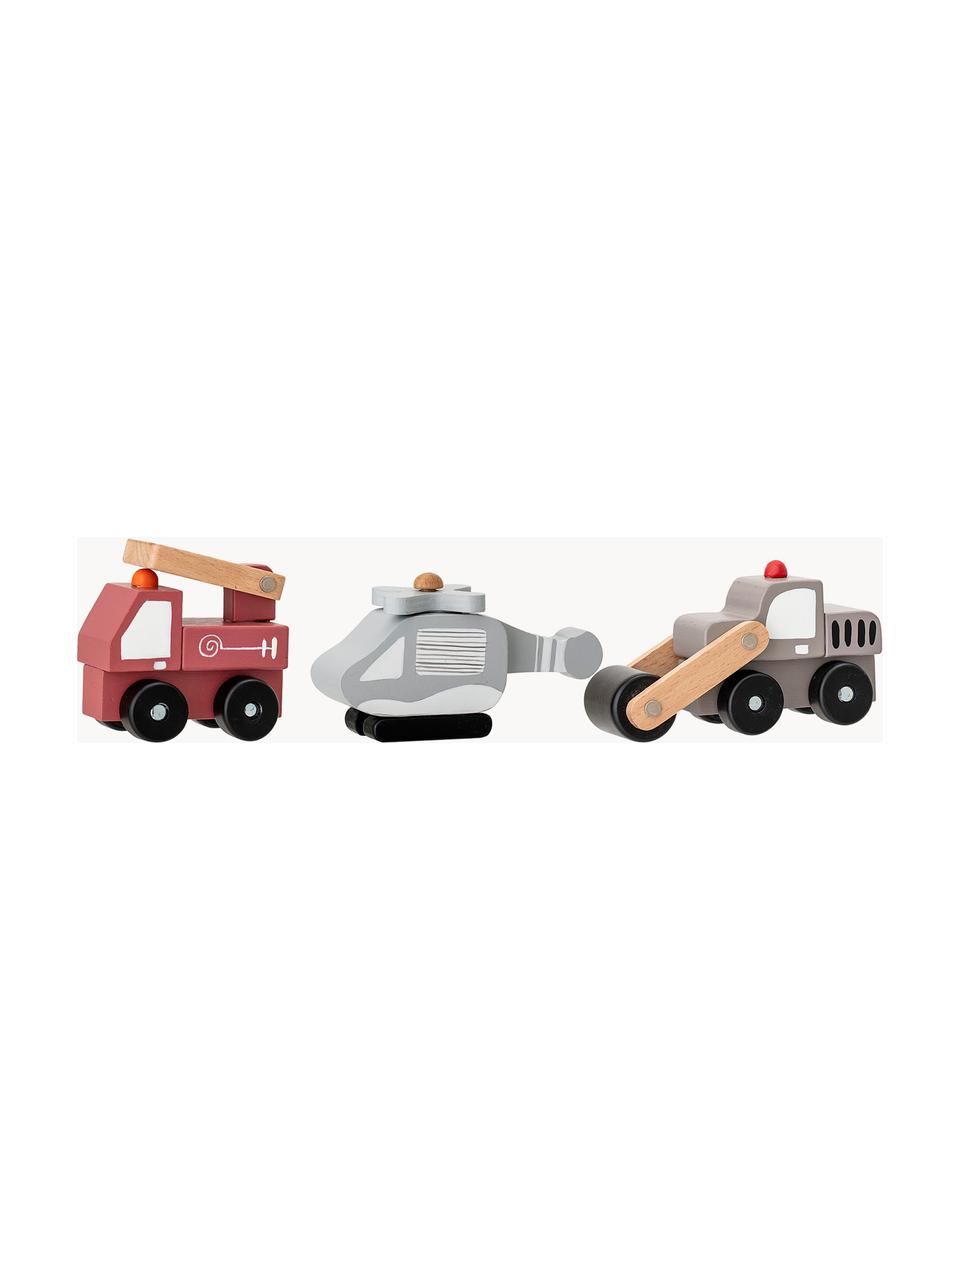 Spielzeugautos Bruno, 3er-Set, Mitteldichte Holzfaserplatte (MDF), Schichtholz, Metall, Bunt, Set mit verschiedenen Größen